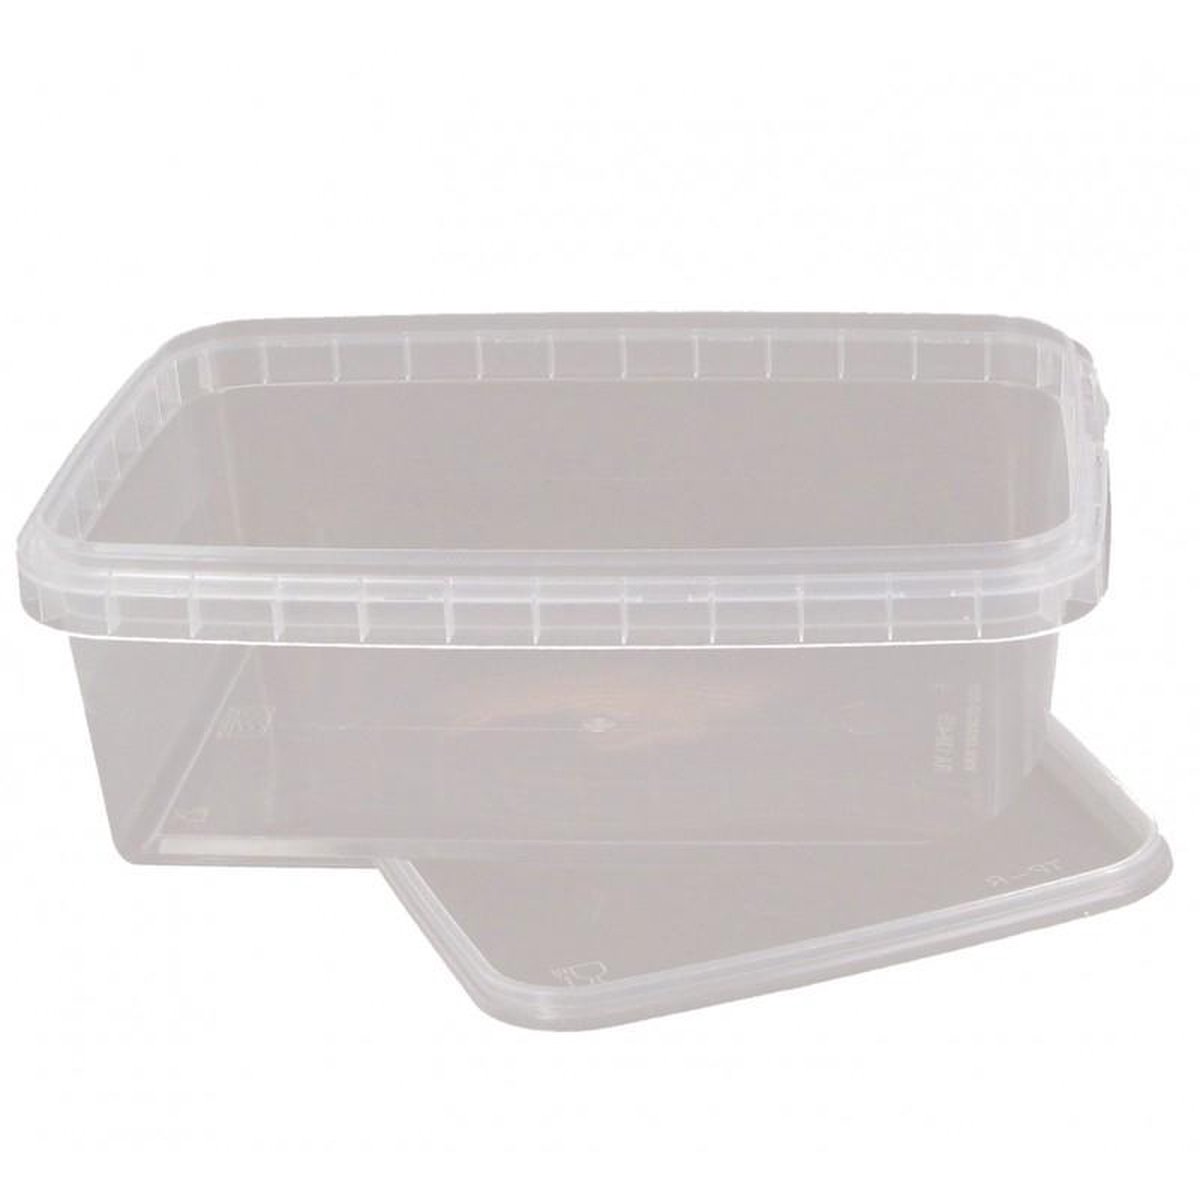 VOORDEELPAK: 5 Pakjes van Doorzichtige rechthoekige hard plastic voedsel containers, 270 cc - verpakking van 5 containers